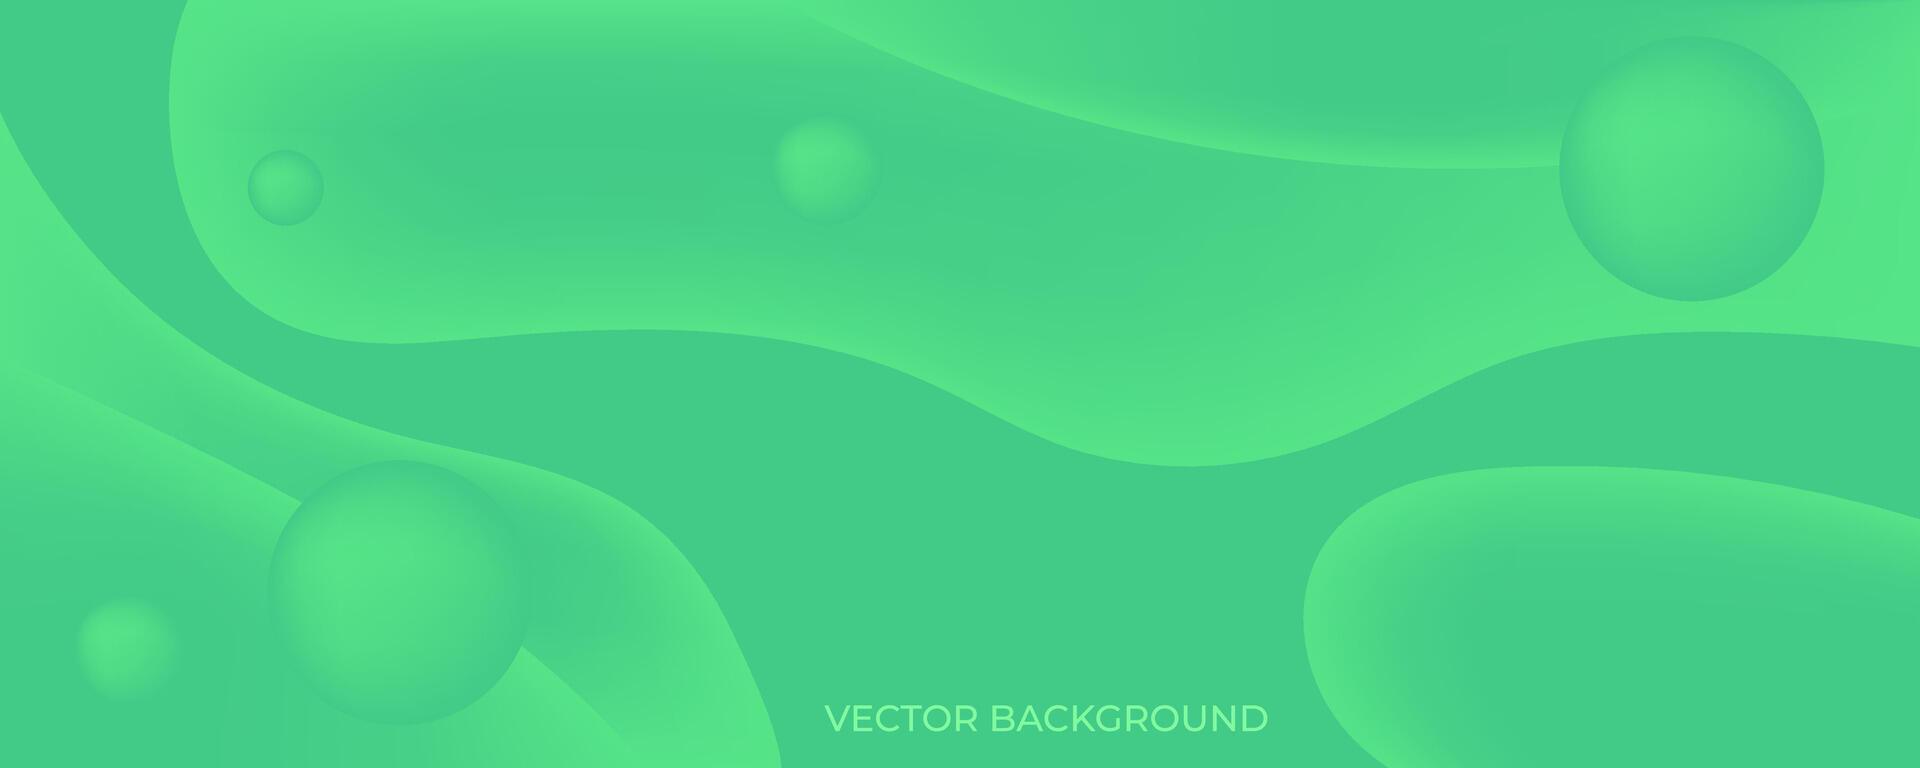 verde abstrato fundo com círculos e ondas vetor